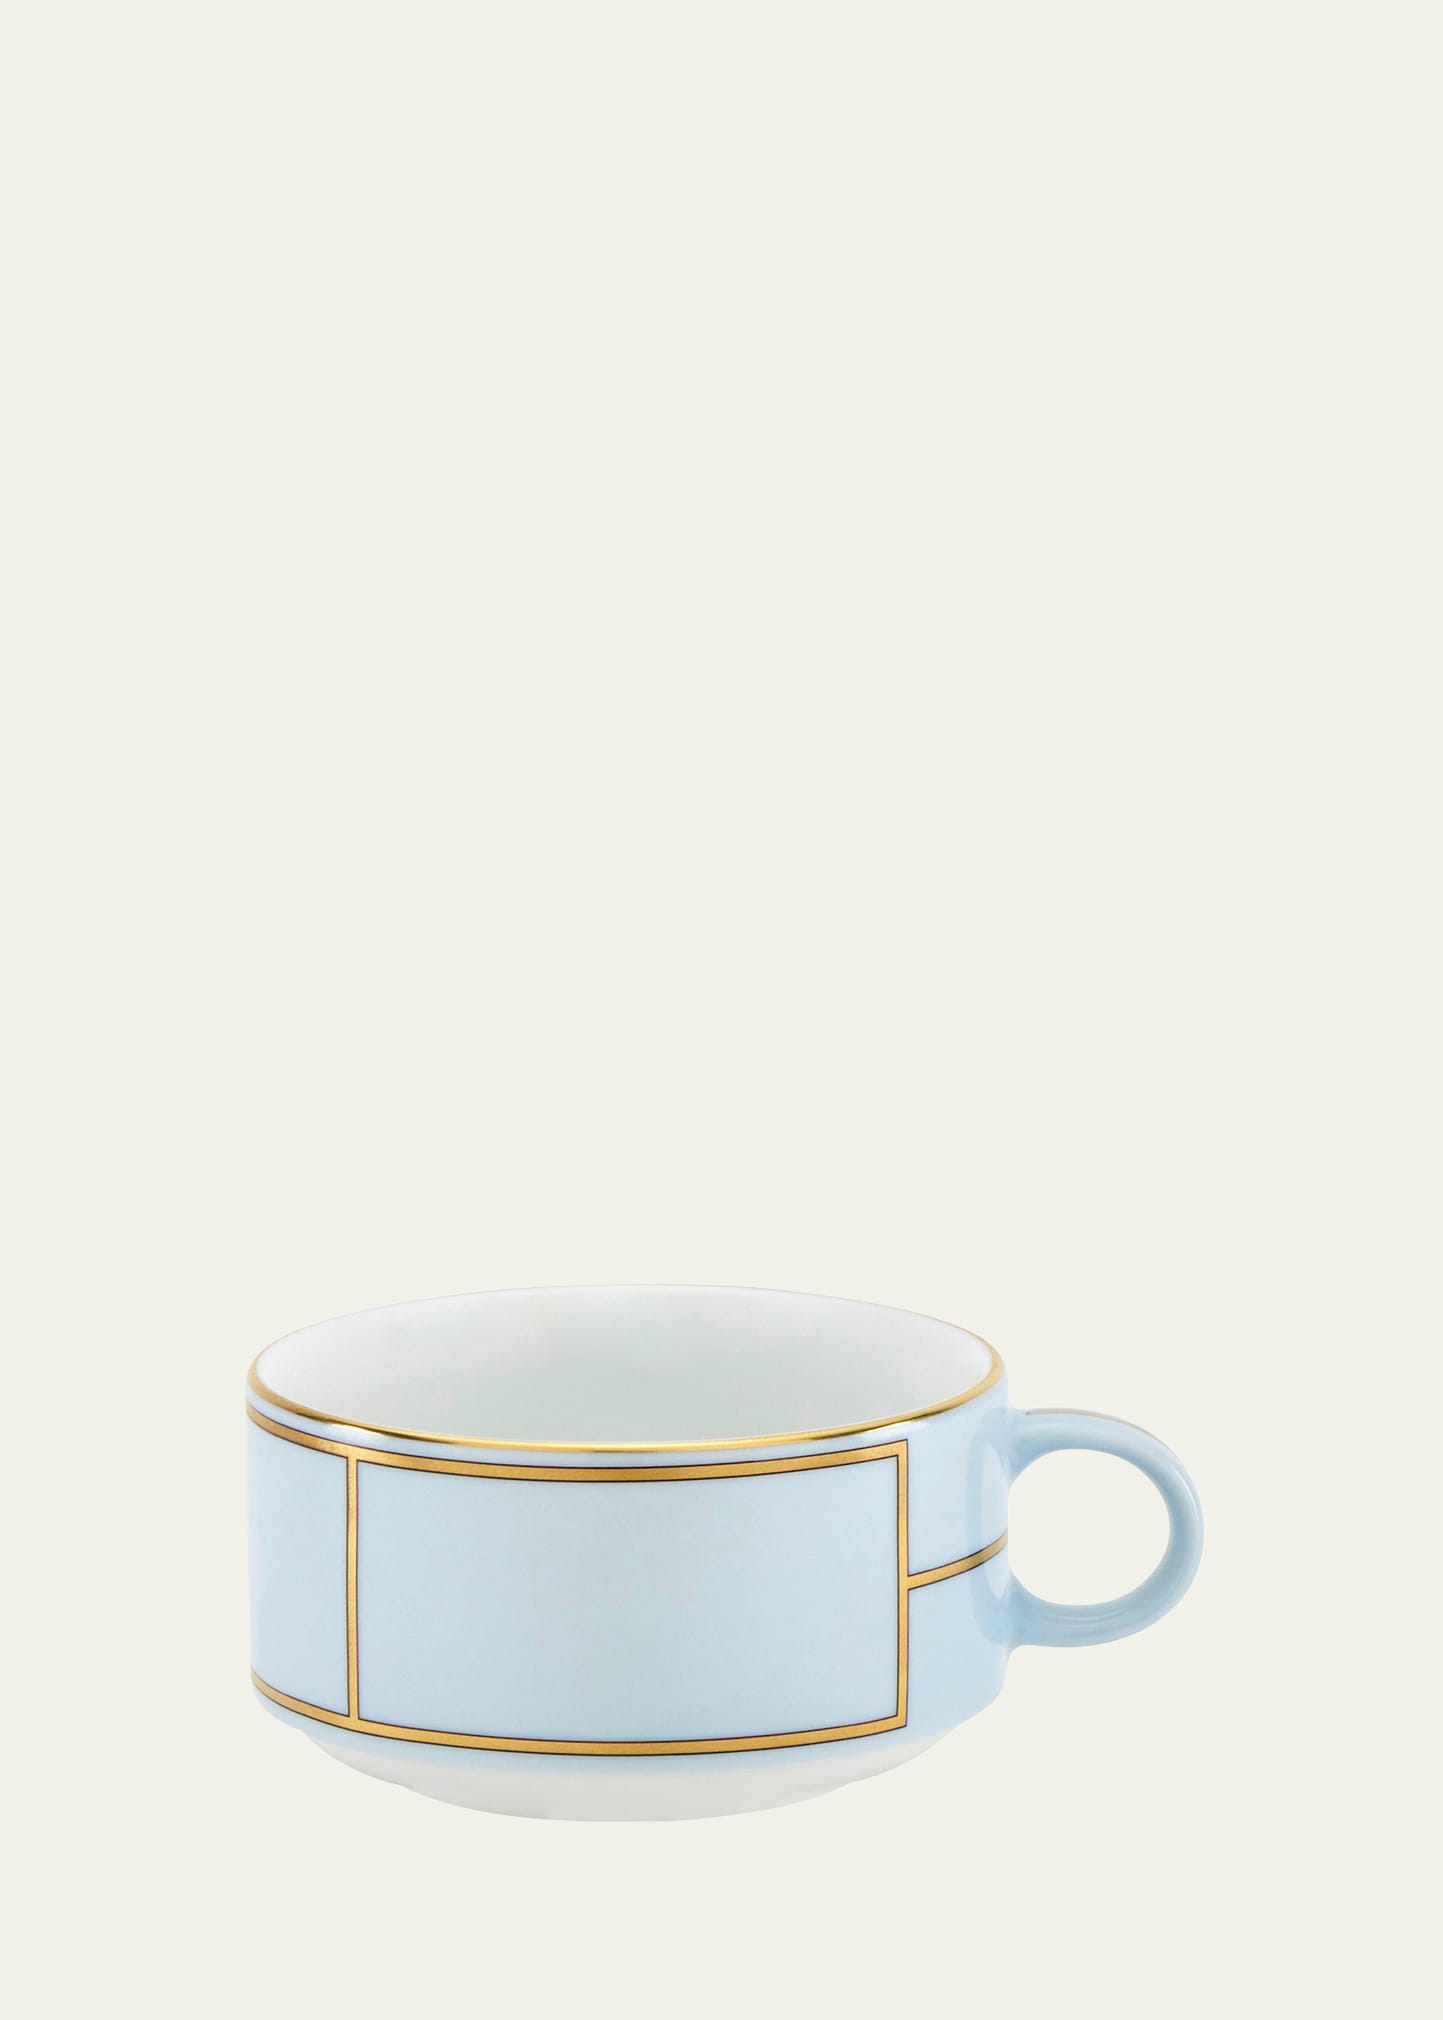 Diva Celeste Colonna Tea Cup